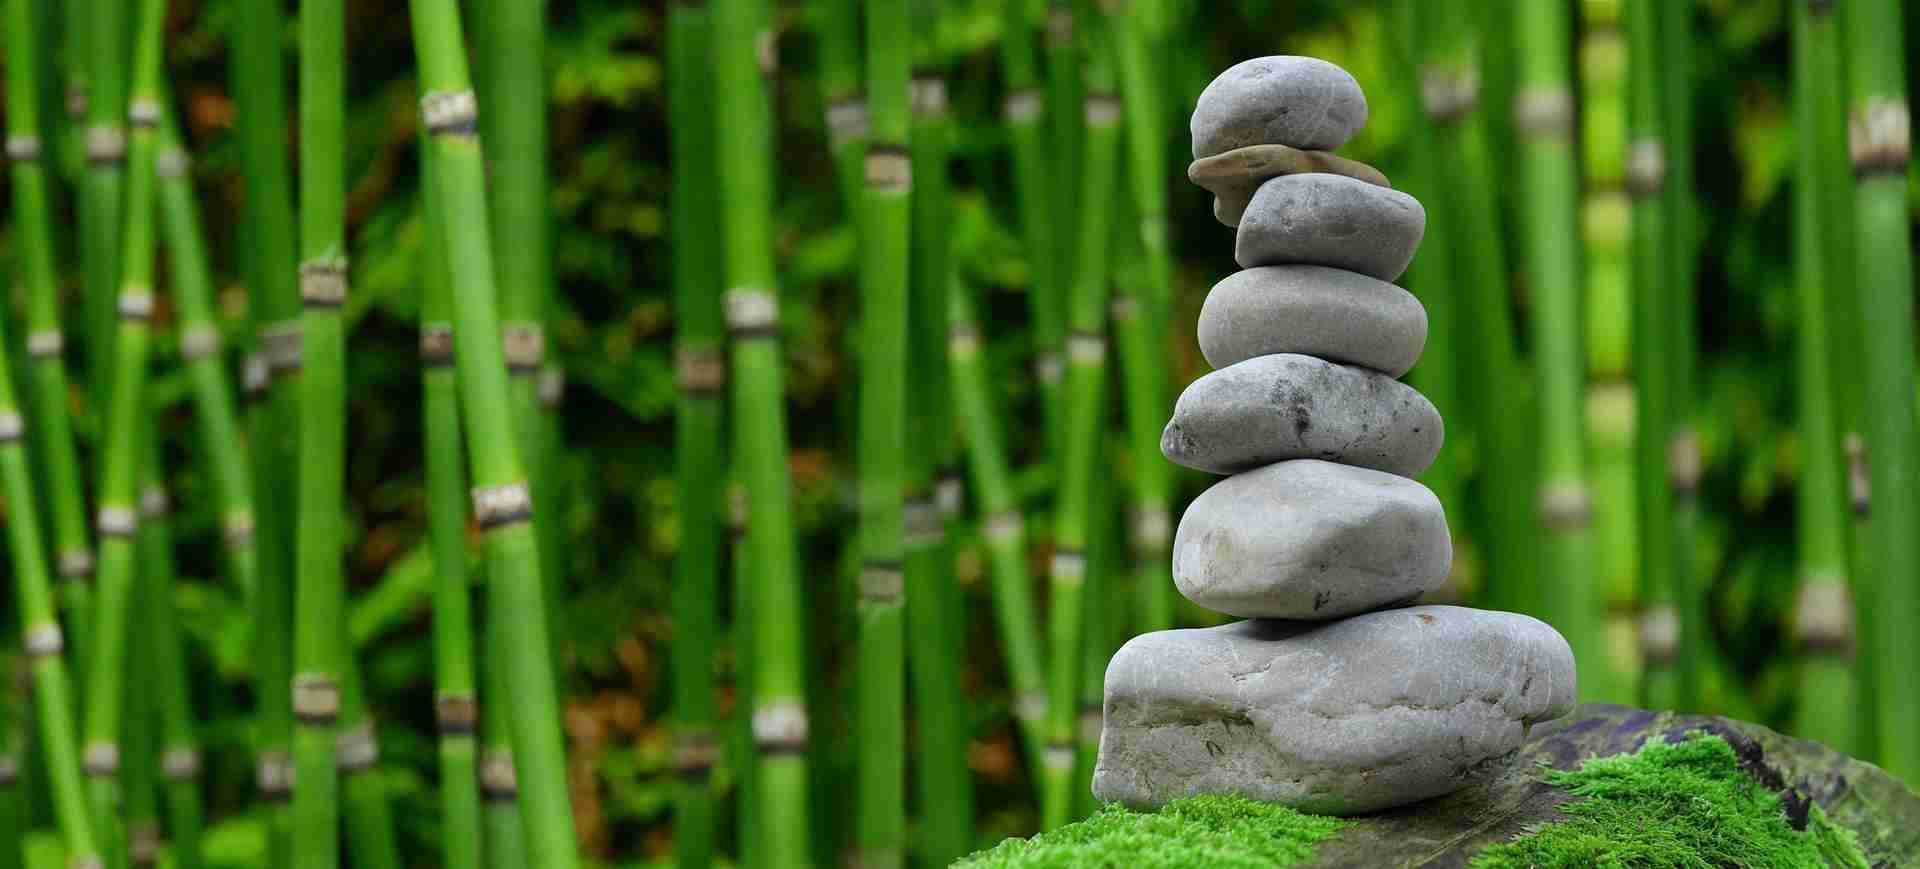 Des pierres en équilibre désignant le bien-être